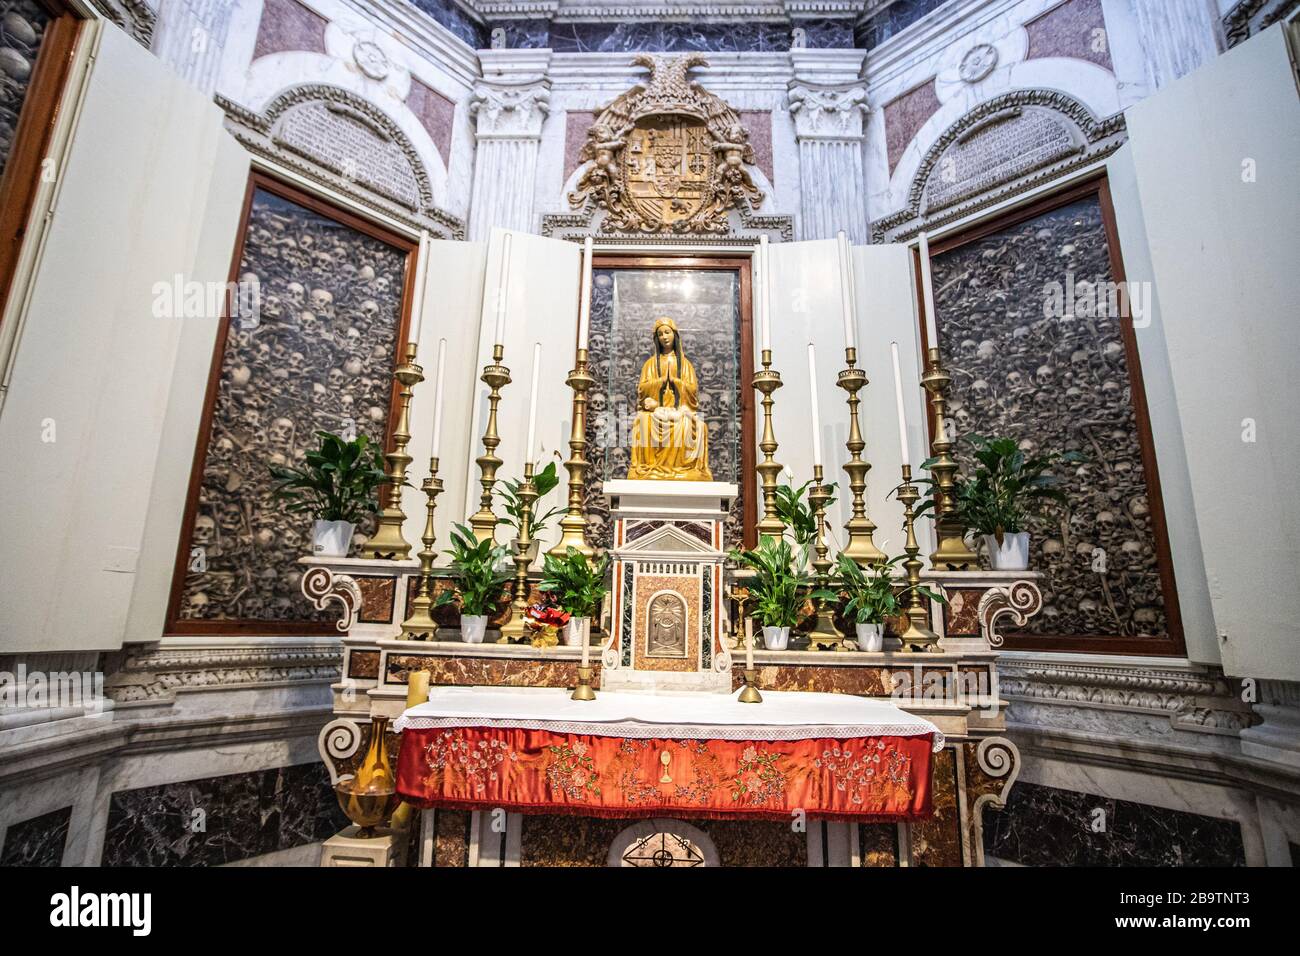 Capilla de los Mártires, Catedral de Otranto, Oranto, Provincia de Lecce, Italia Foto de stock